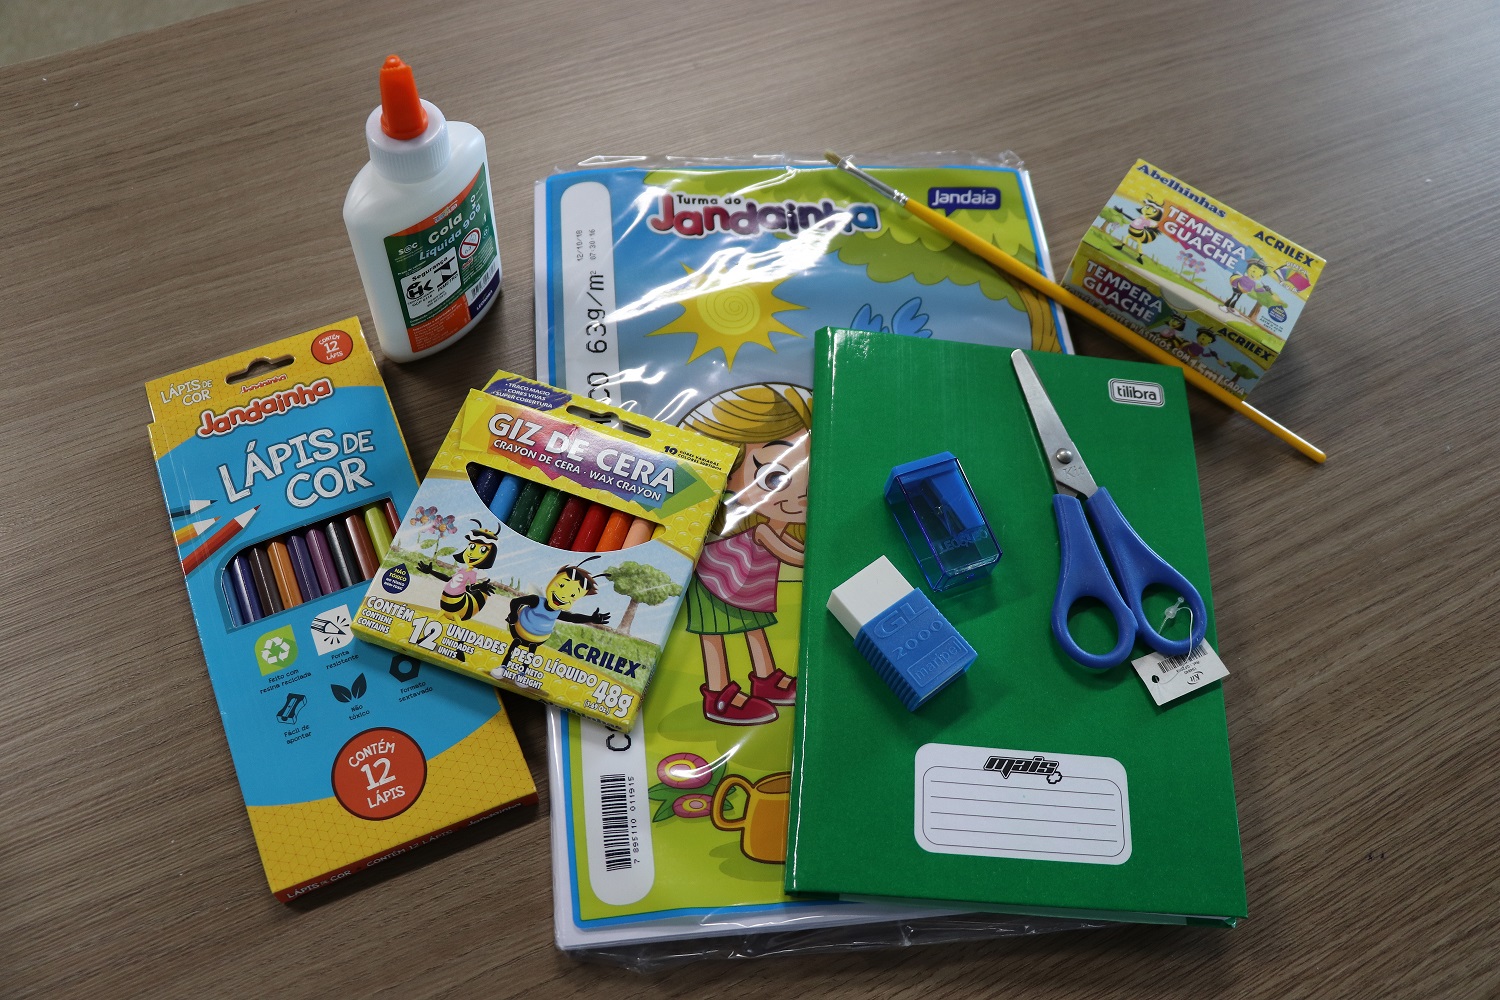 Foto Sintrivest inicia distribuição de kits escolares para associados 